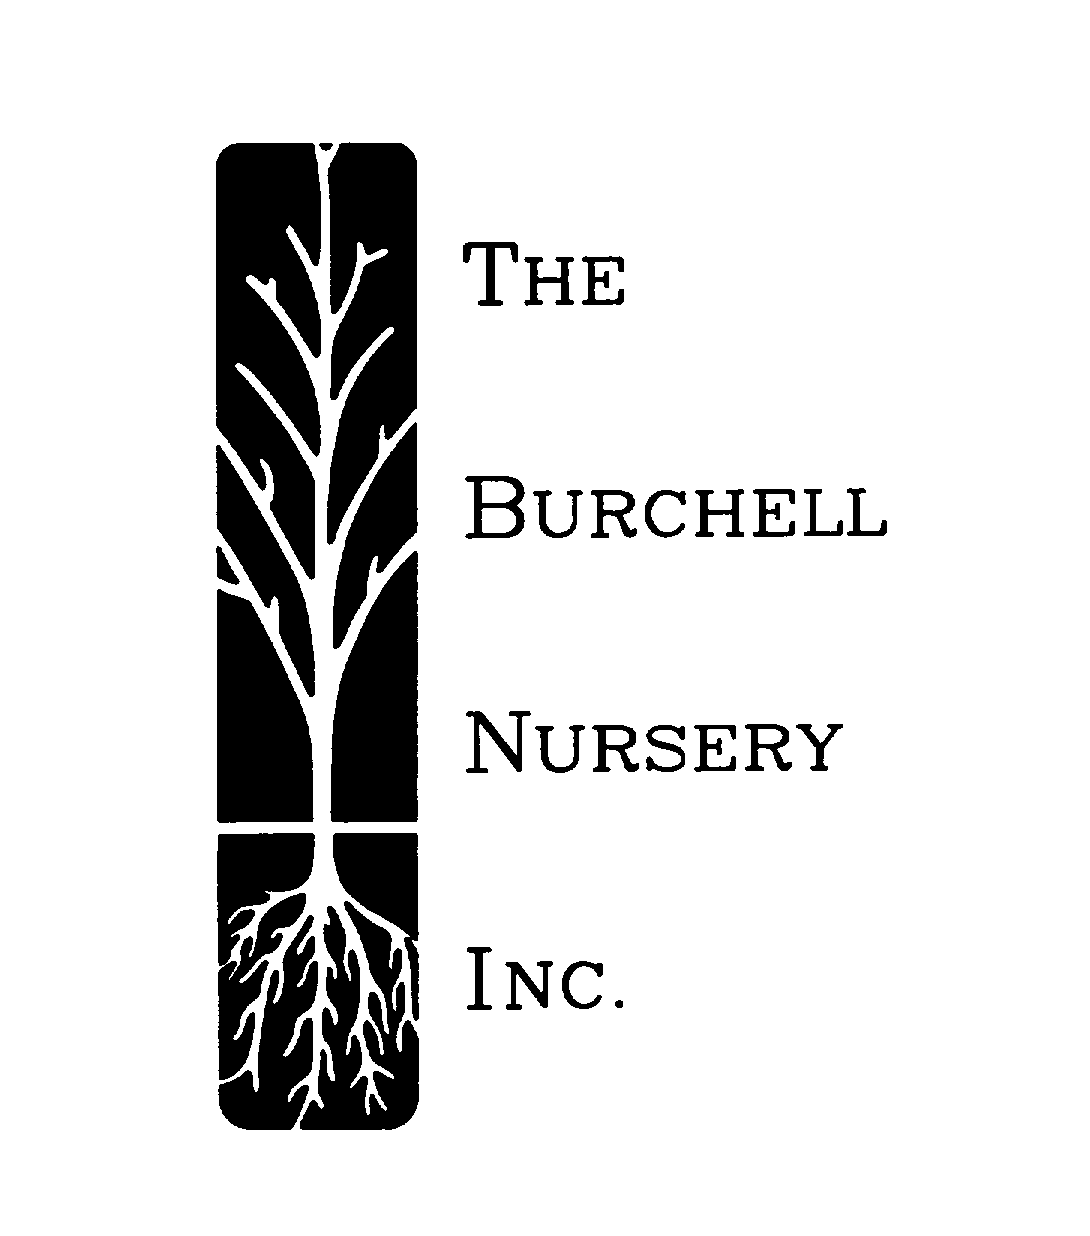  THE BURCHELL NURSERY INC.